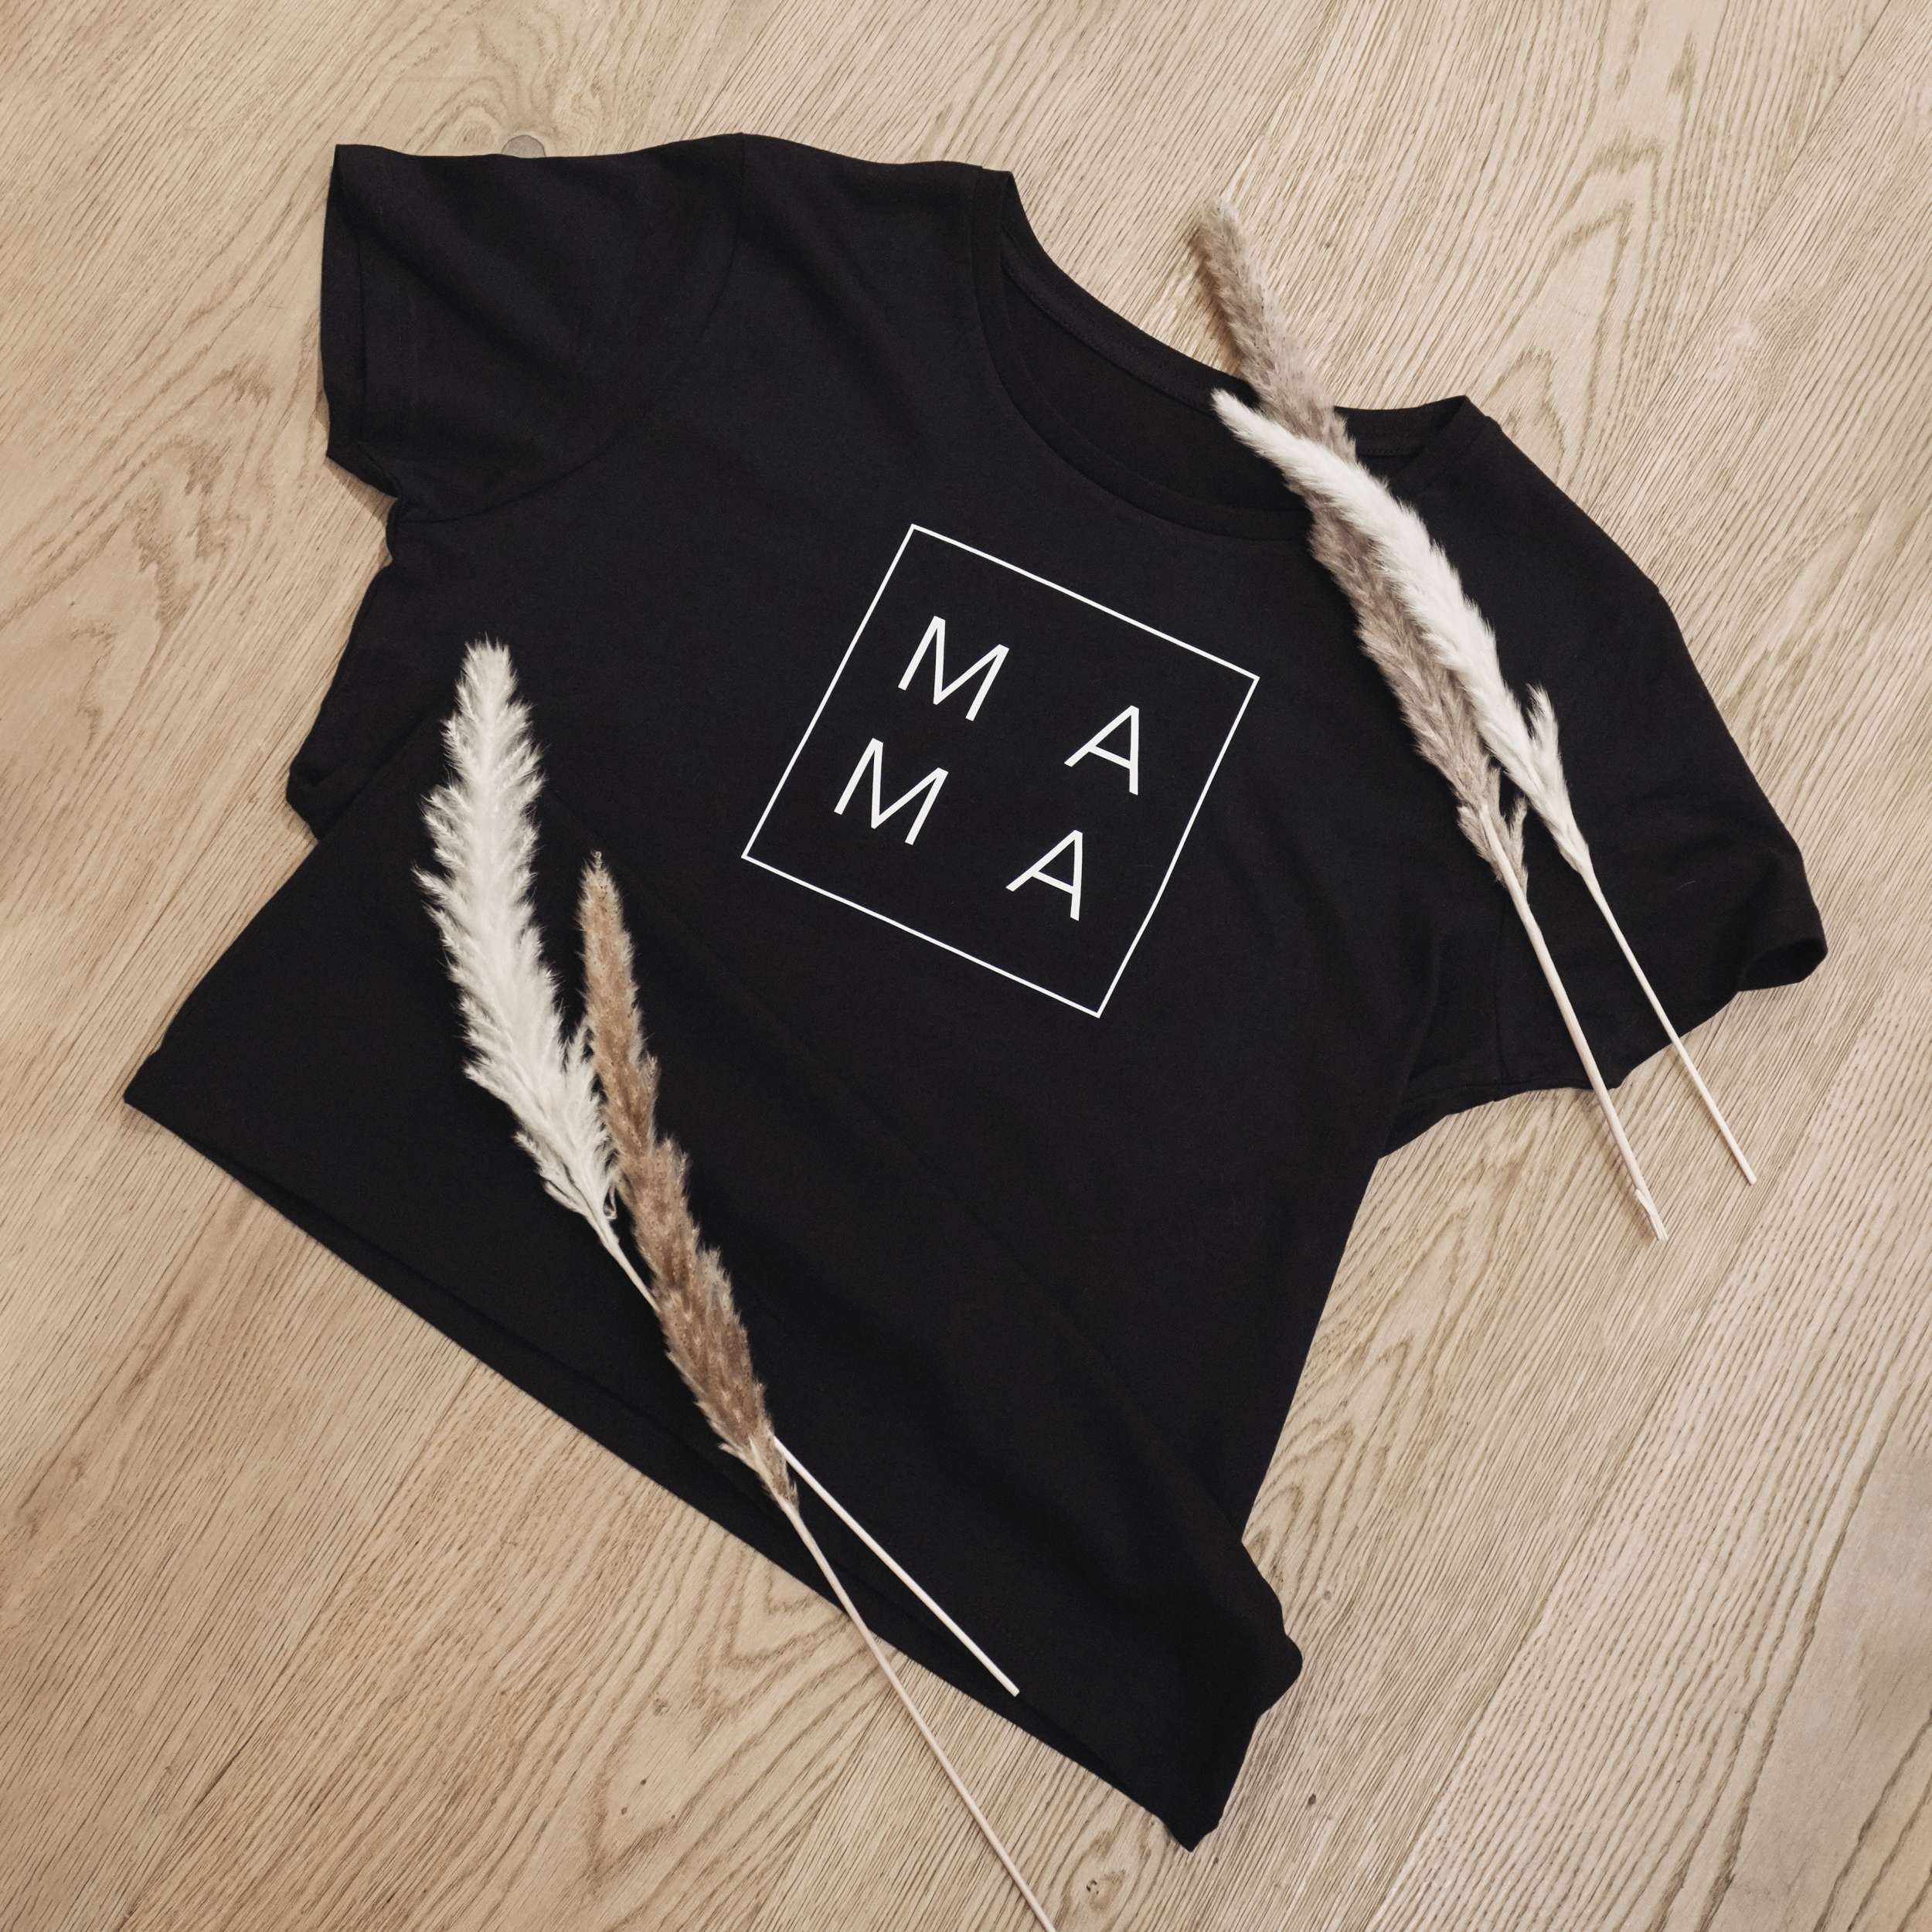 Unser T-Shirt "Mama" ist das perfekte Geschenk für jede Mama!